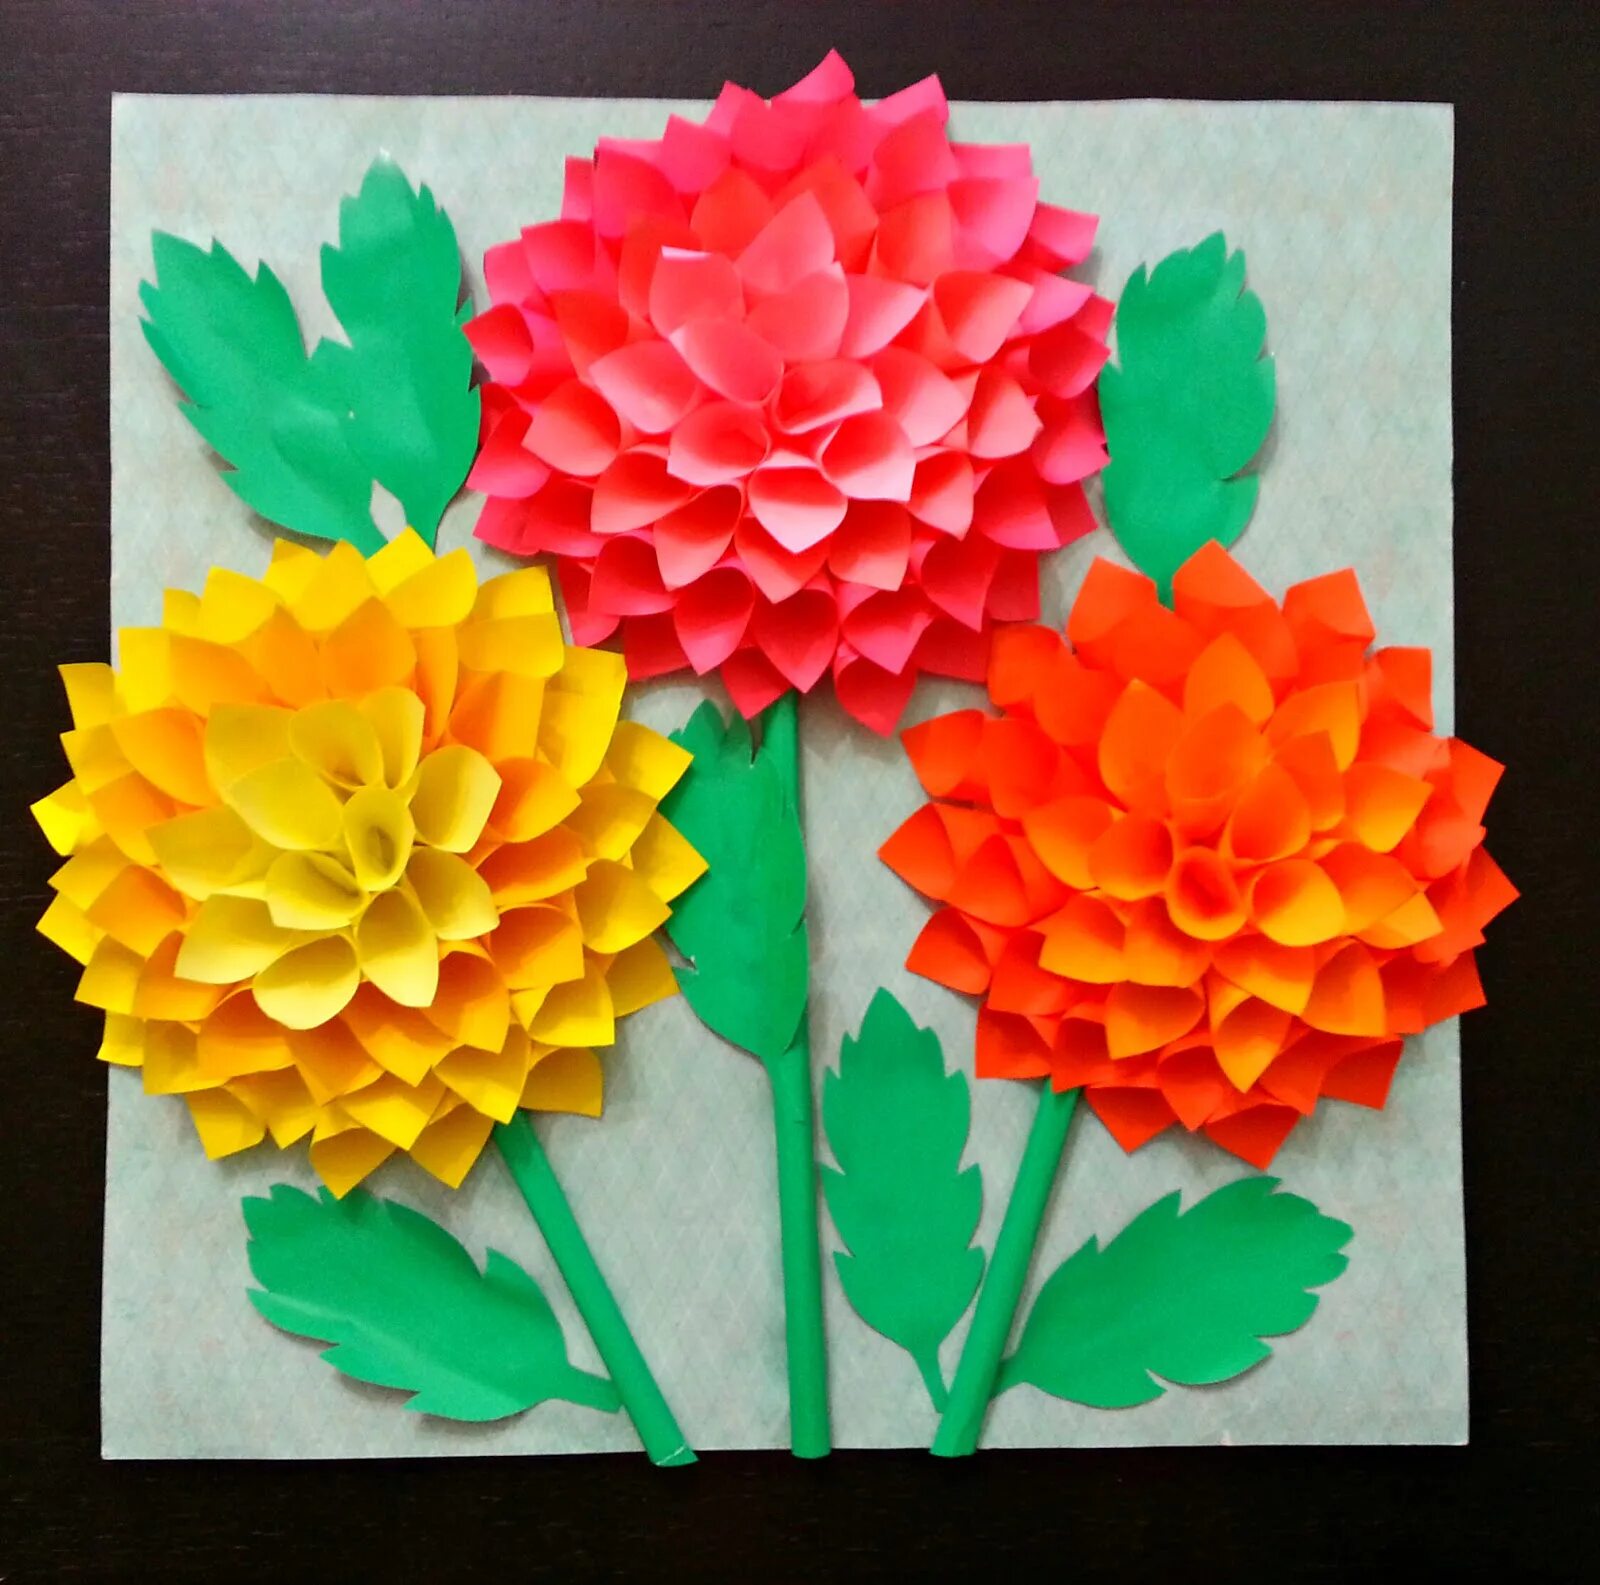 Цветы из цветной бумаги. Объемная аппликация. Объемная аппликация цветов. Цветы из цветной бумаги для детей. Легкие поделки 4 класс